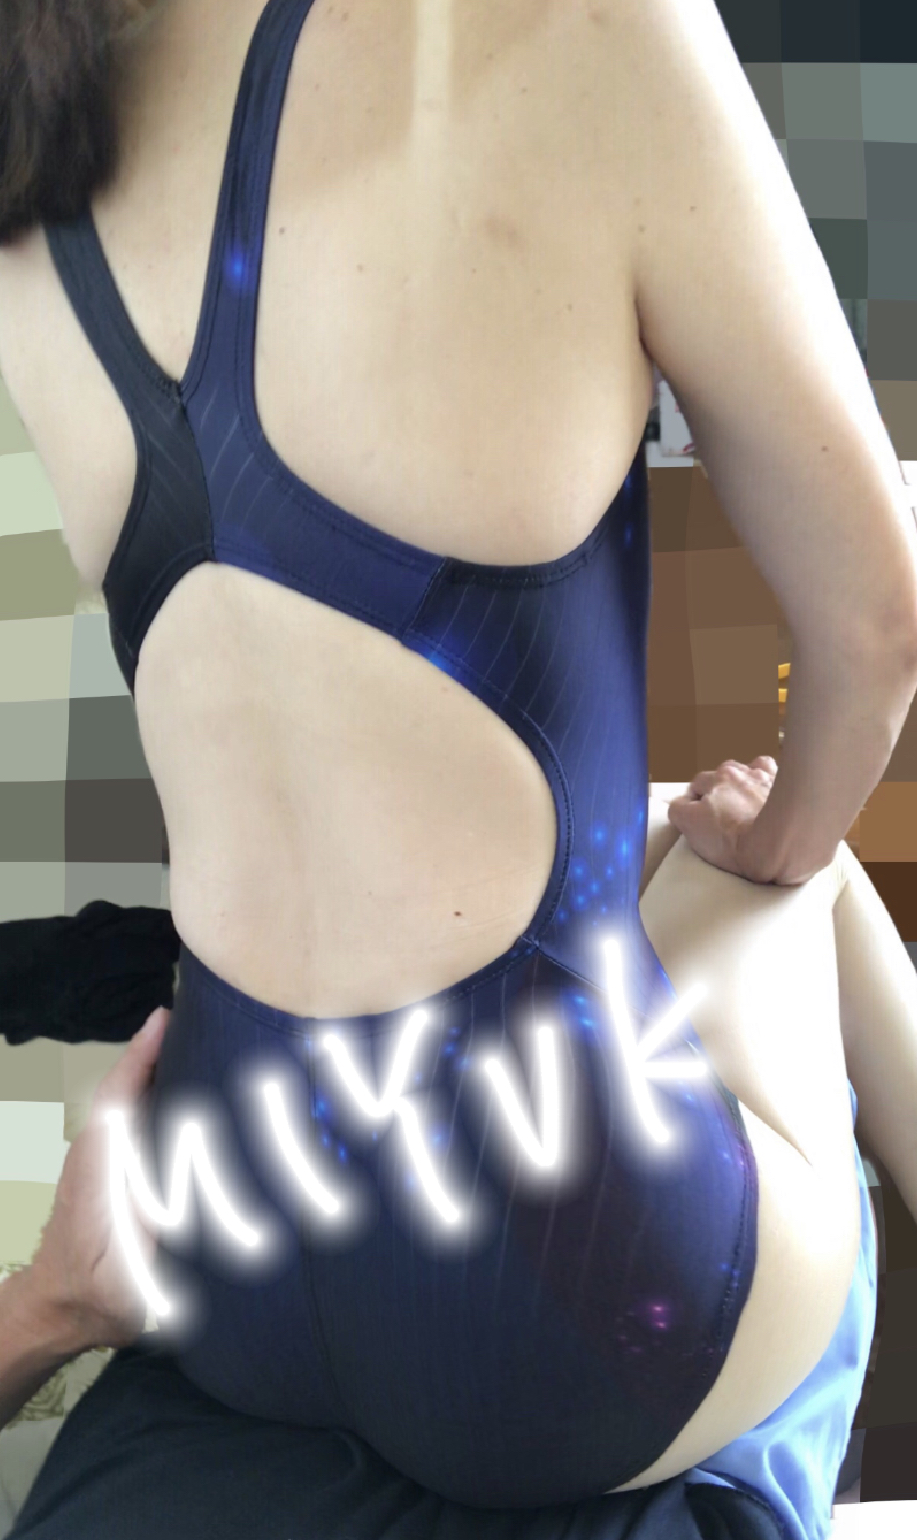 熟女 競泳水着画像掲示板へ投稿されたMIYUKI様の熟女 競泳水着画像 No.15913390550001